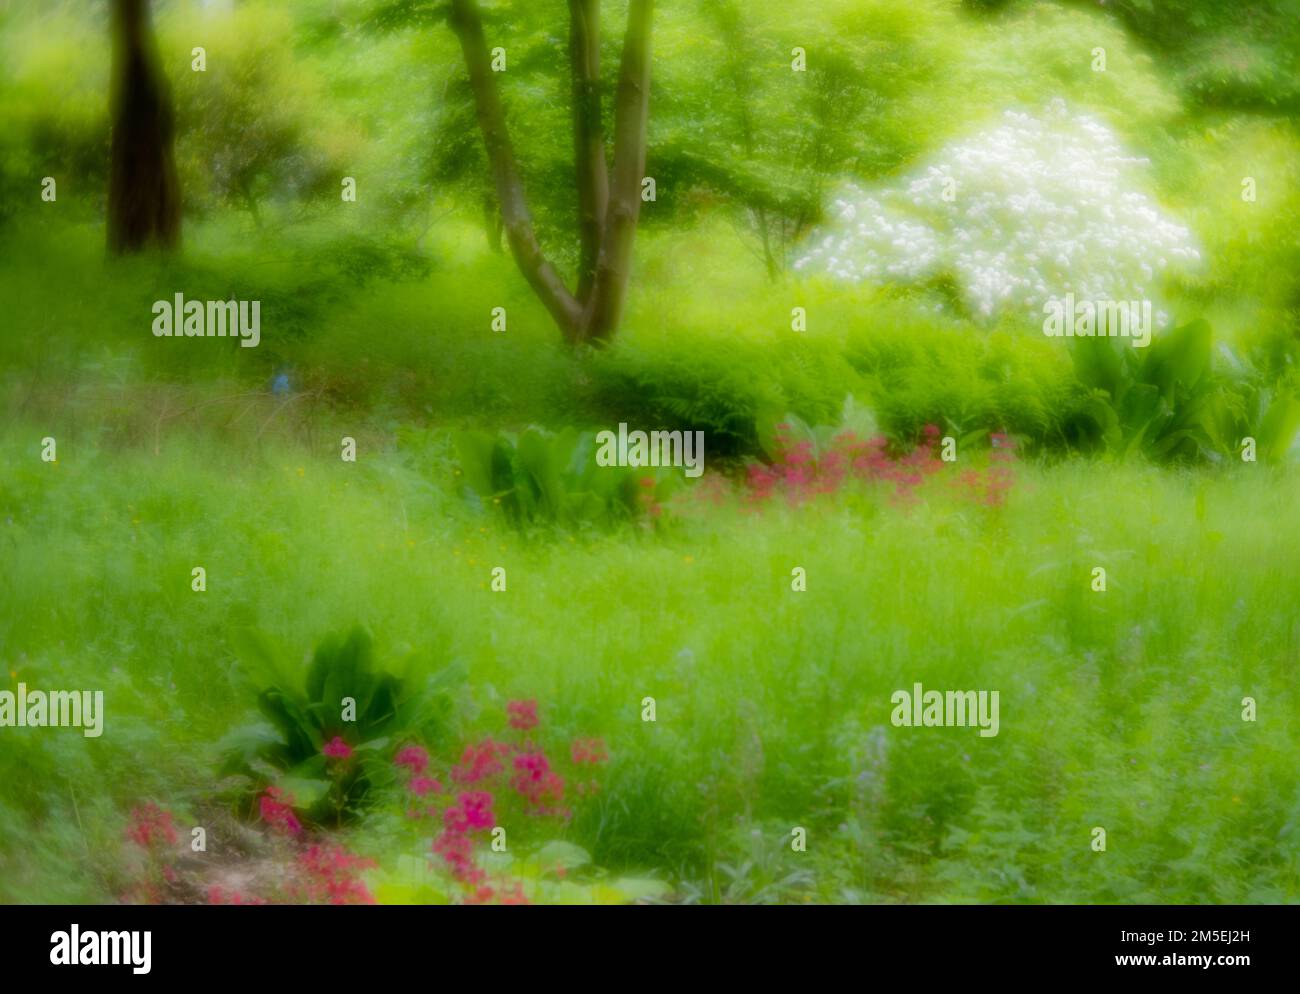 Immagine soffice e misteriosa della primavera in un giardino inglese Foto Stock